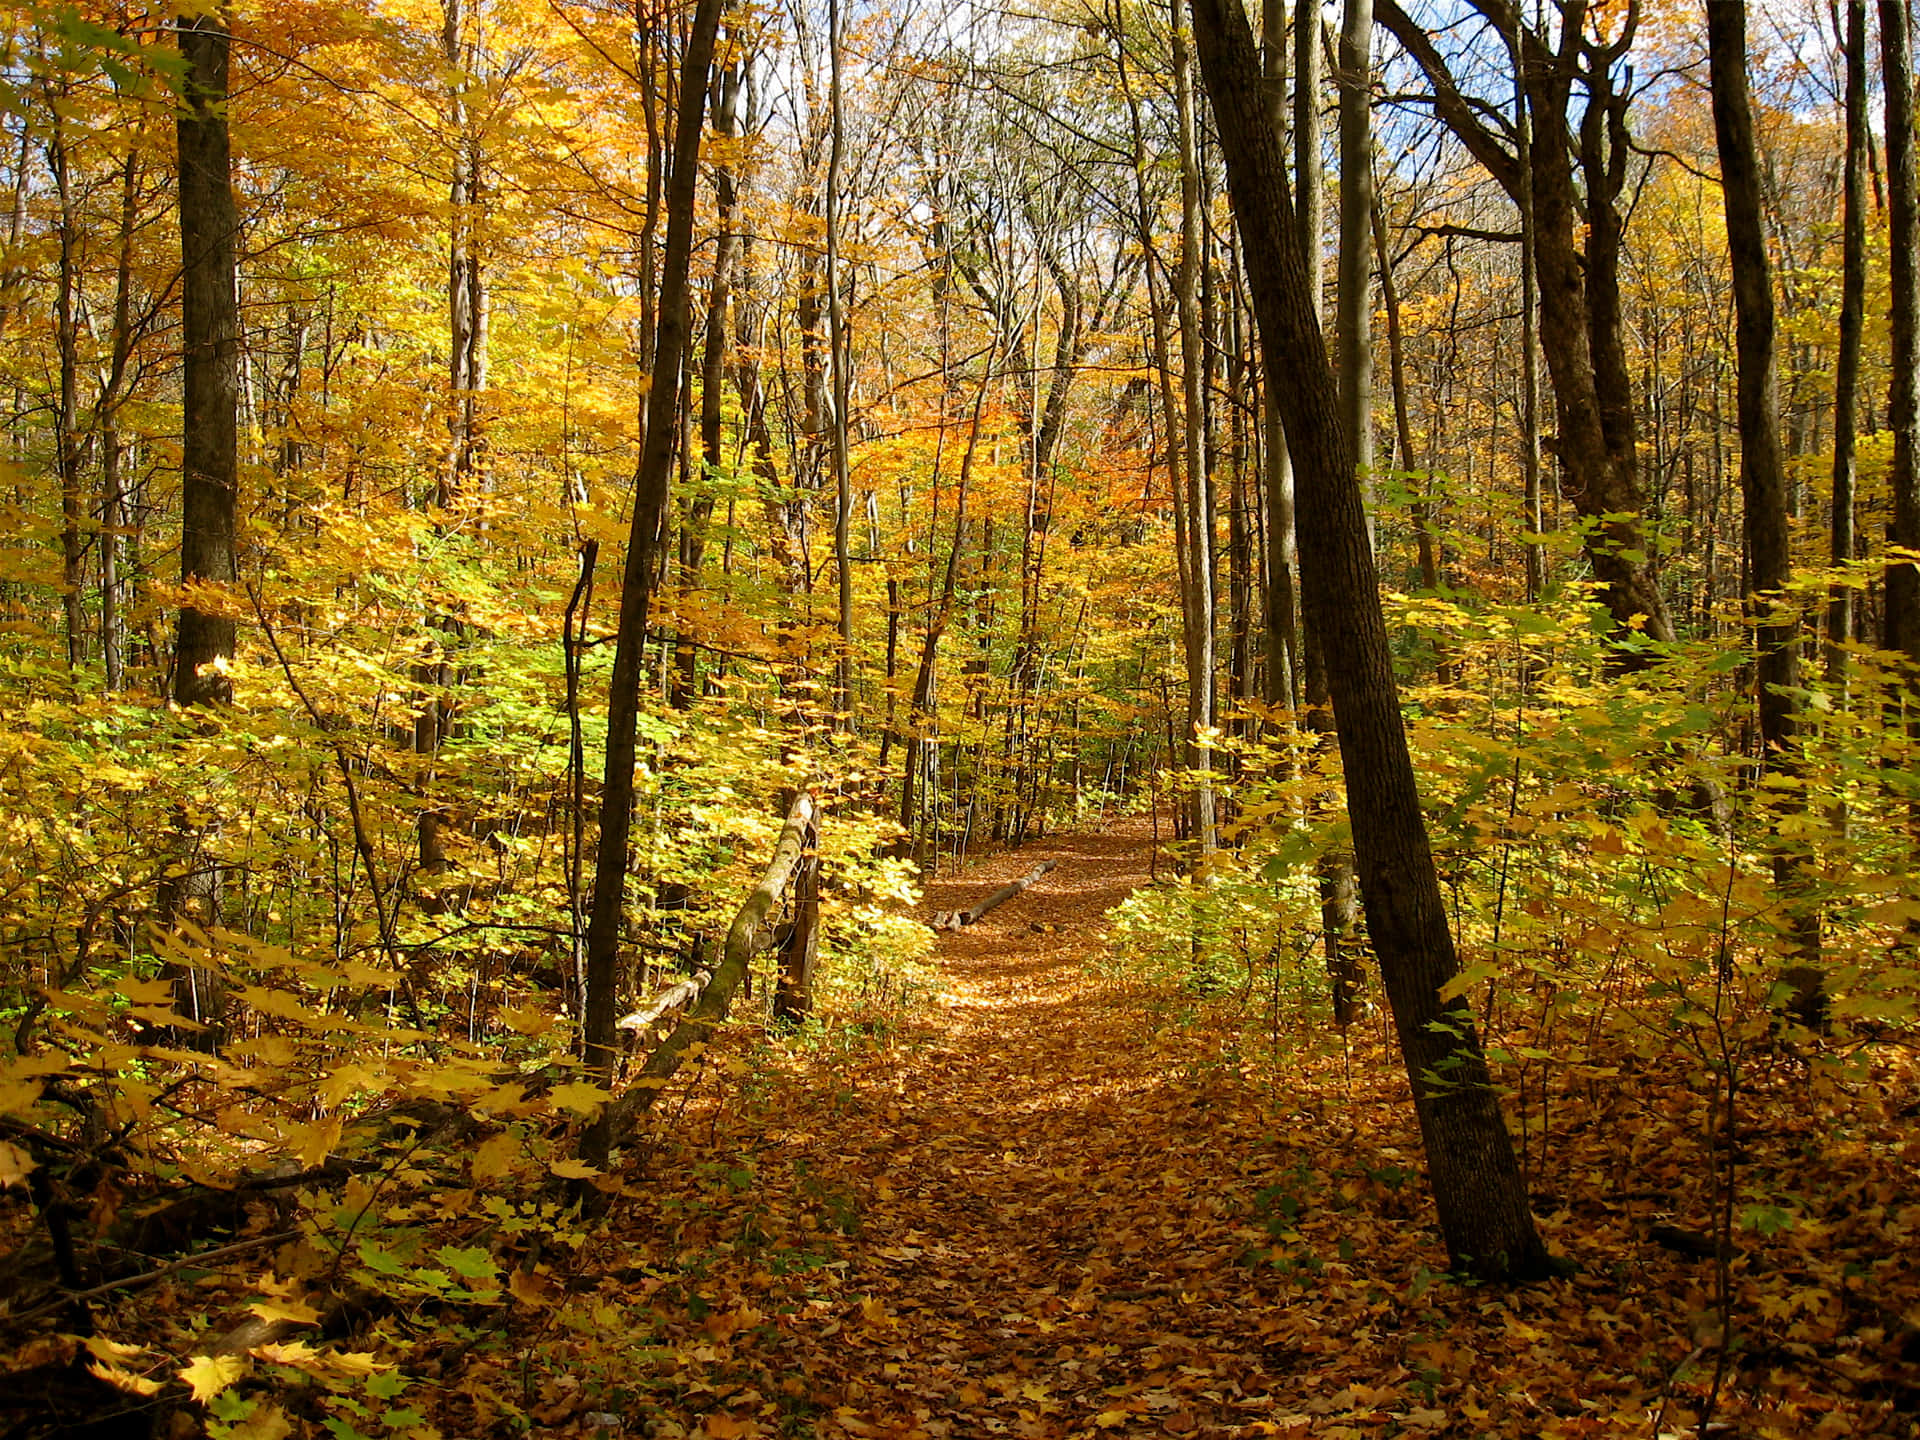 A beautiful path through a golden Autumn forest Wallpaper